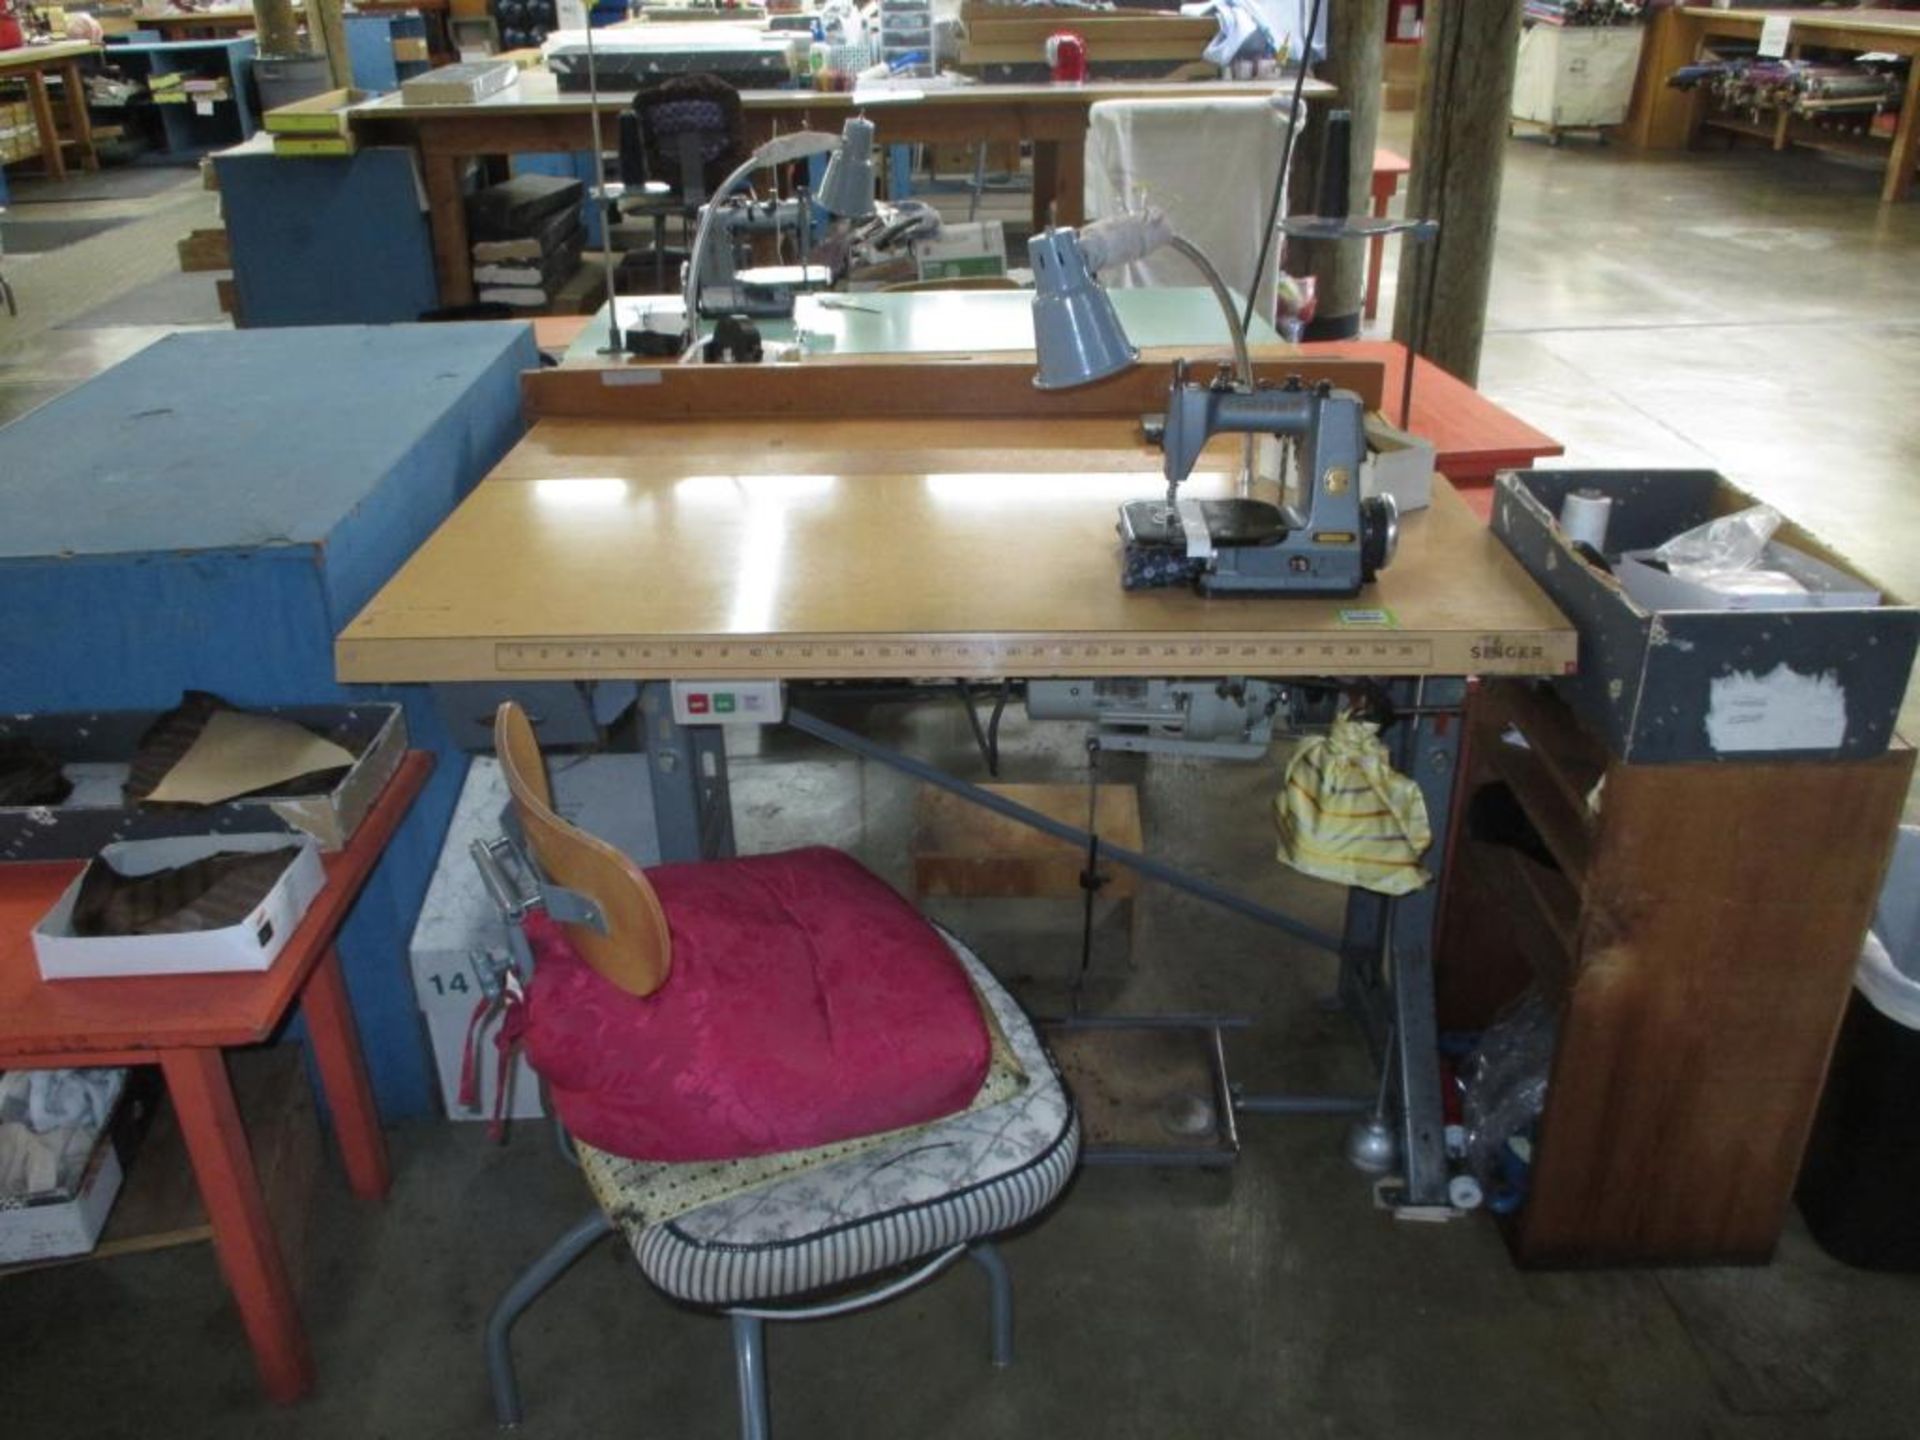 Chain Stitch Industrial Sewing Machine. Singer 240K12 Chain Stitch Industrial Sewing Machine with